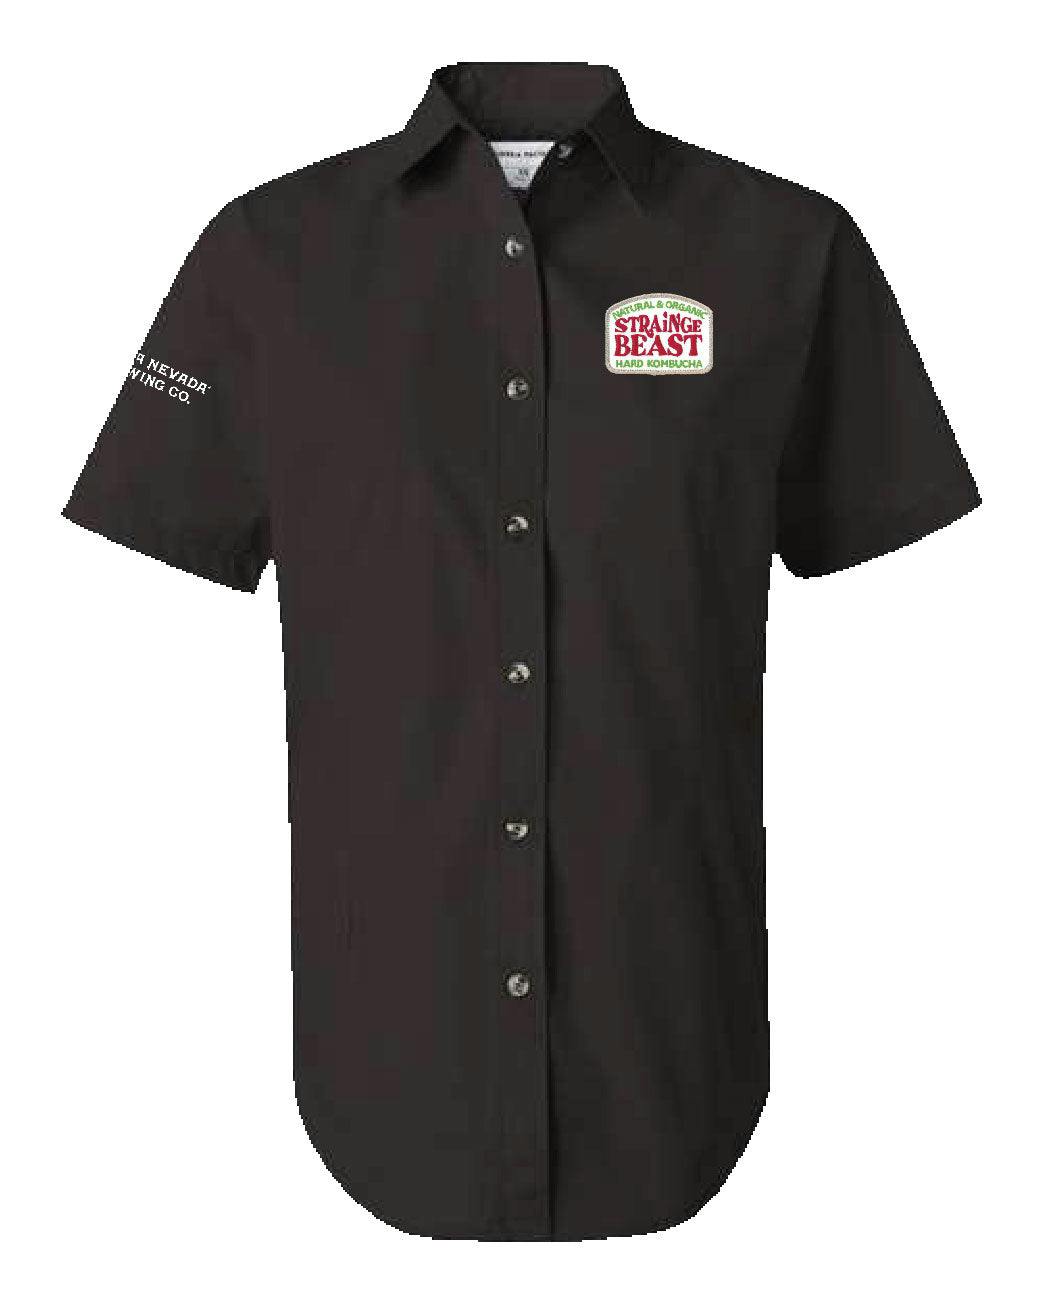 Women's Strainge Beast Button Up - women_s-black-shirt_e2ab32de-8676-46db-b0a7-c1c1d978cfc3